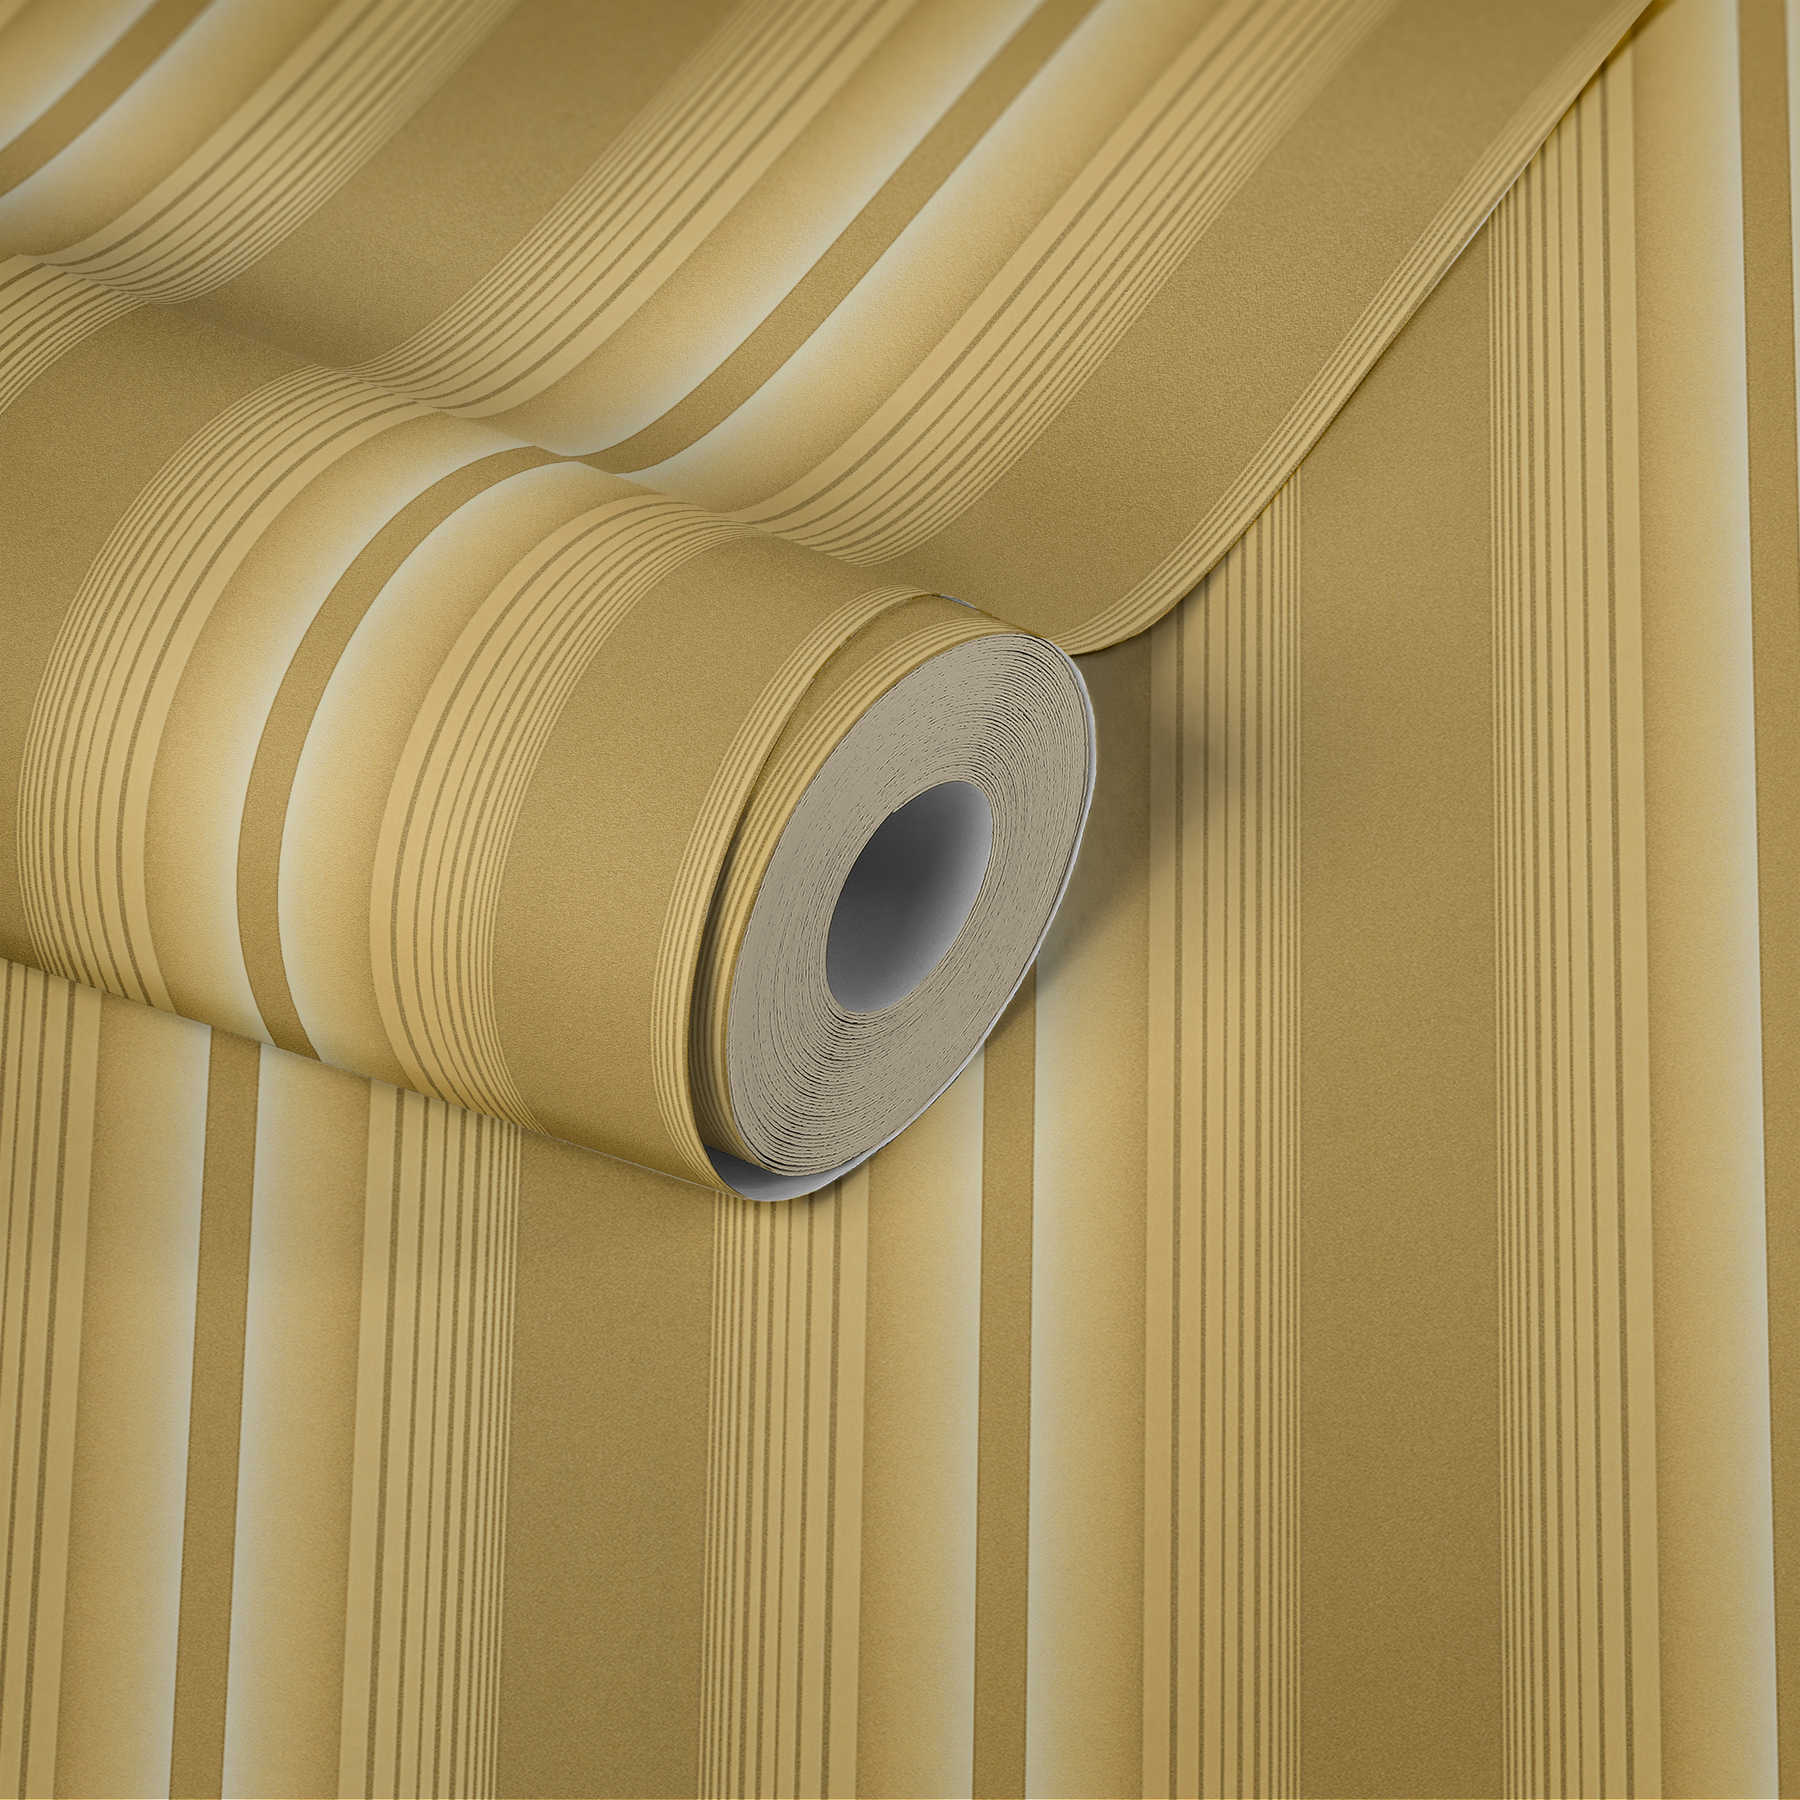             Gouden behang met streeppatroon, elegant & weelderig
        